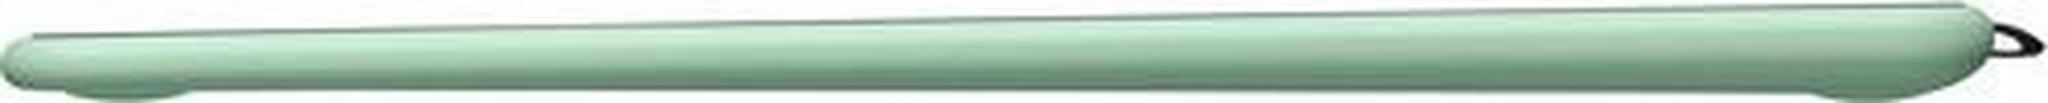 تابلت الرسم الإبداعي واكوم إنتوس بتقنية البلوتوث مع قلم رسم - (وسط) - أخضر فستقي (CTL-6100WLK)